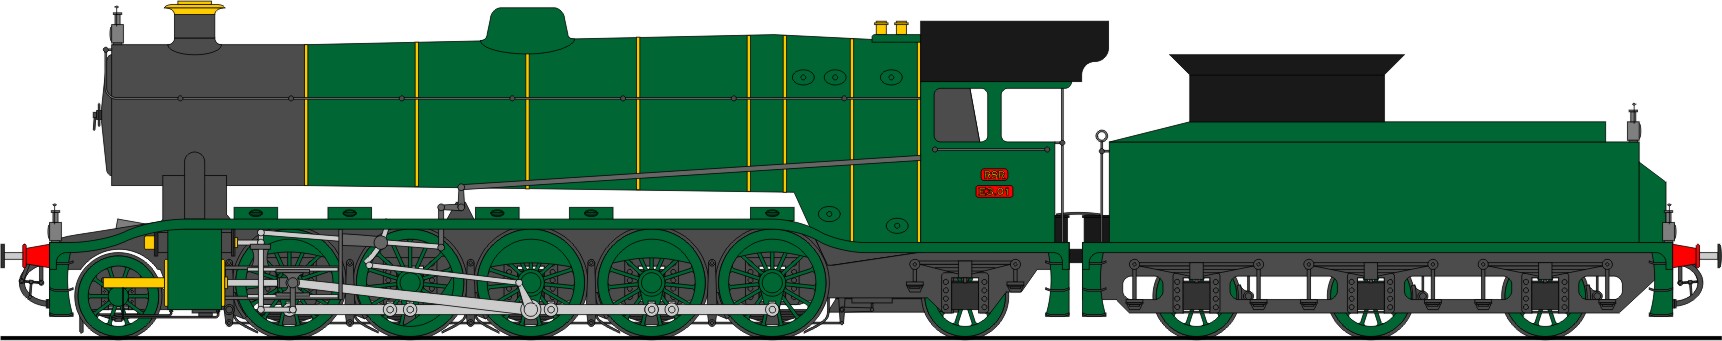 Class E3 2-10-2 (1919)